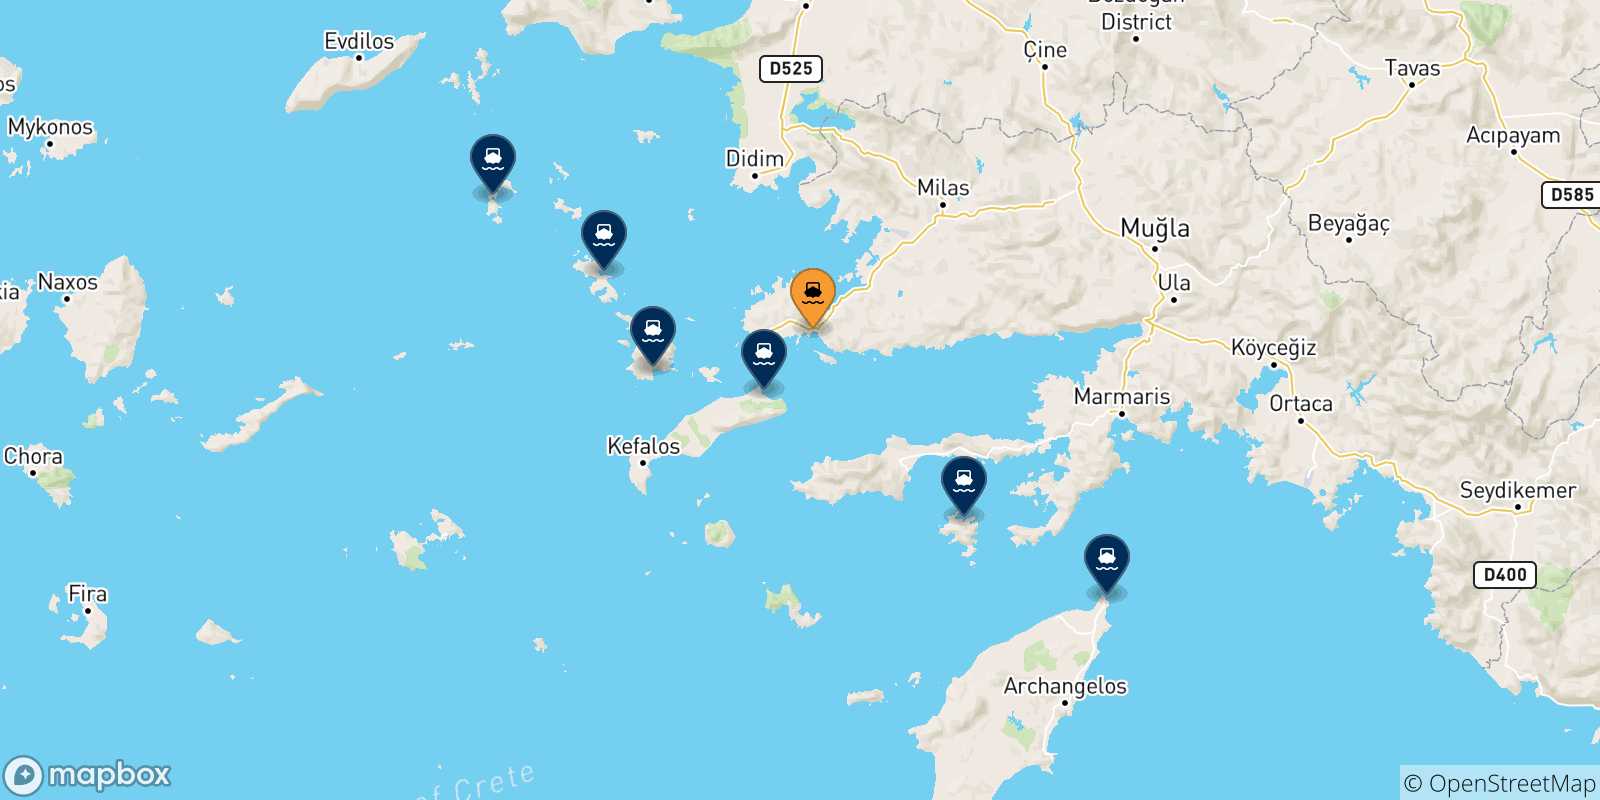 Mappa delle possibili rotte tra Bodrum e le Isole Dodecaneso